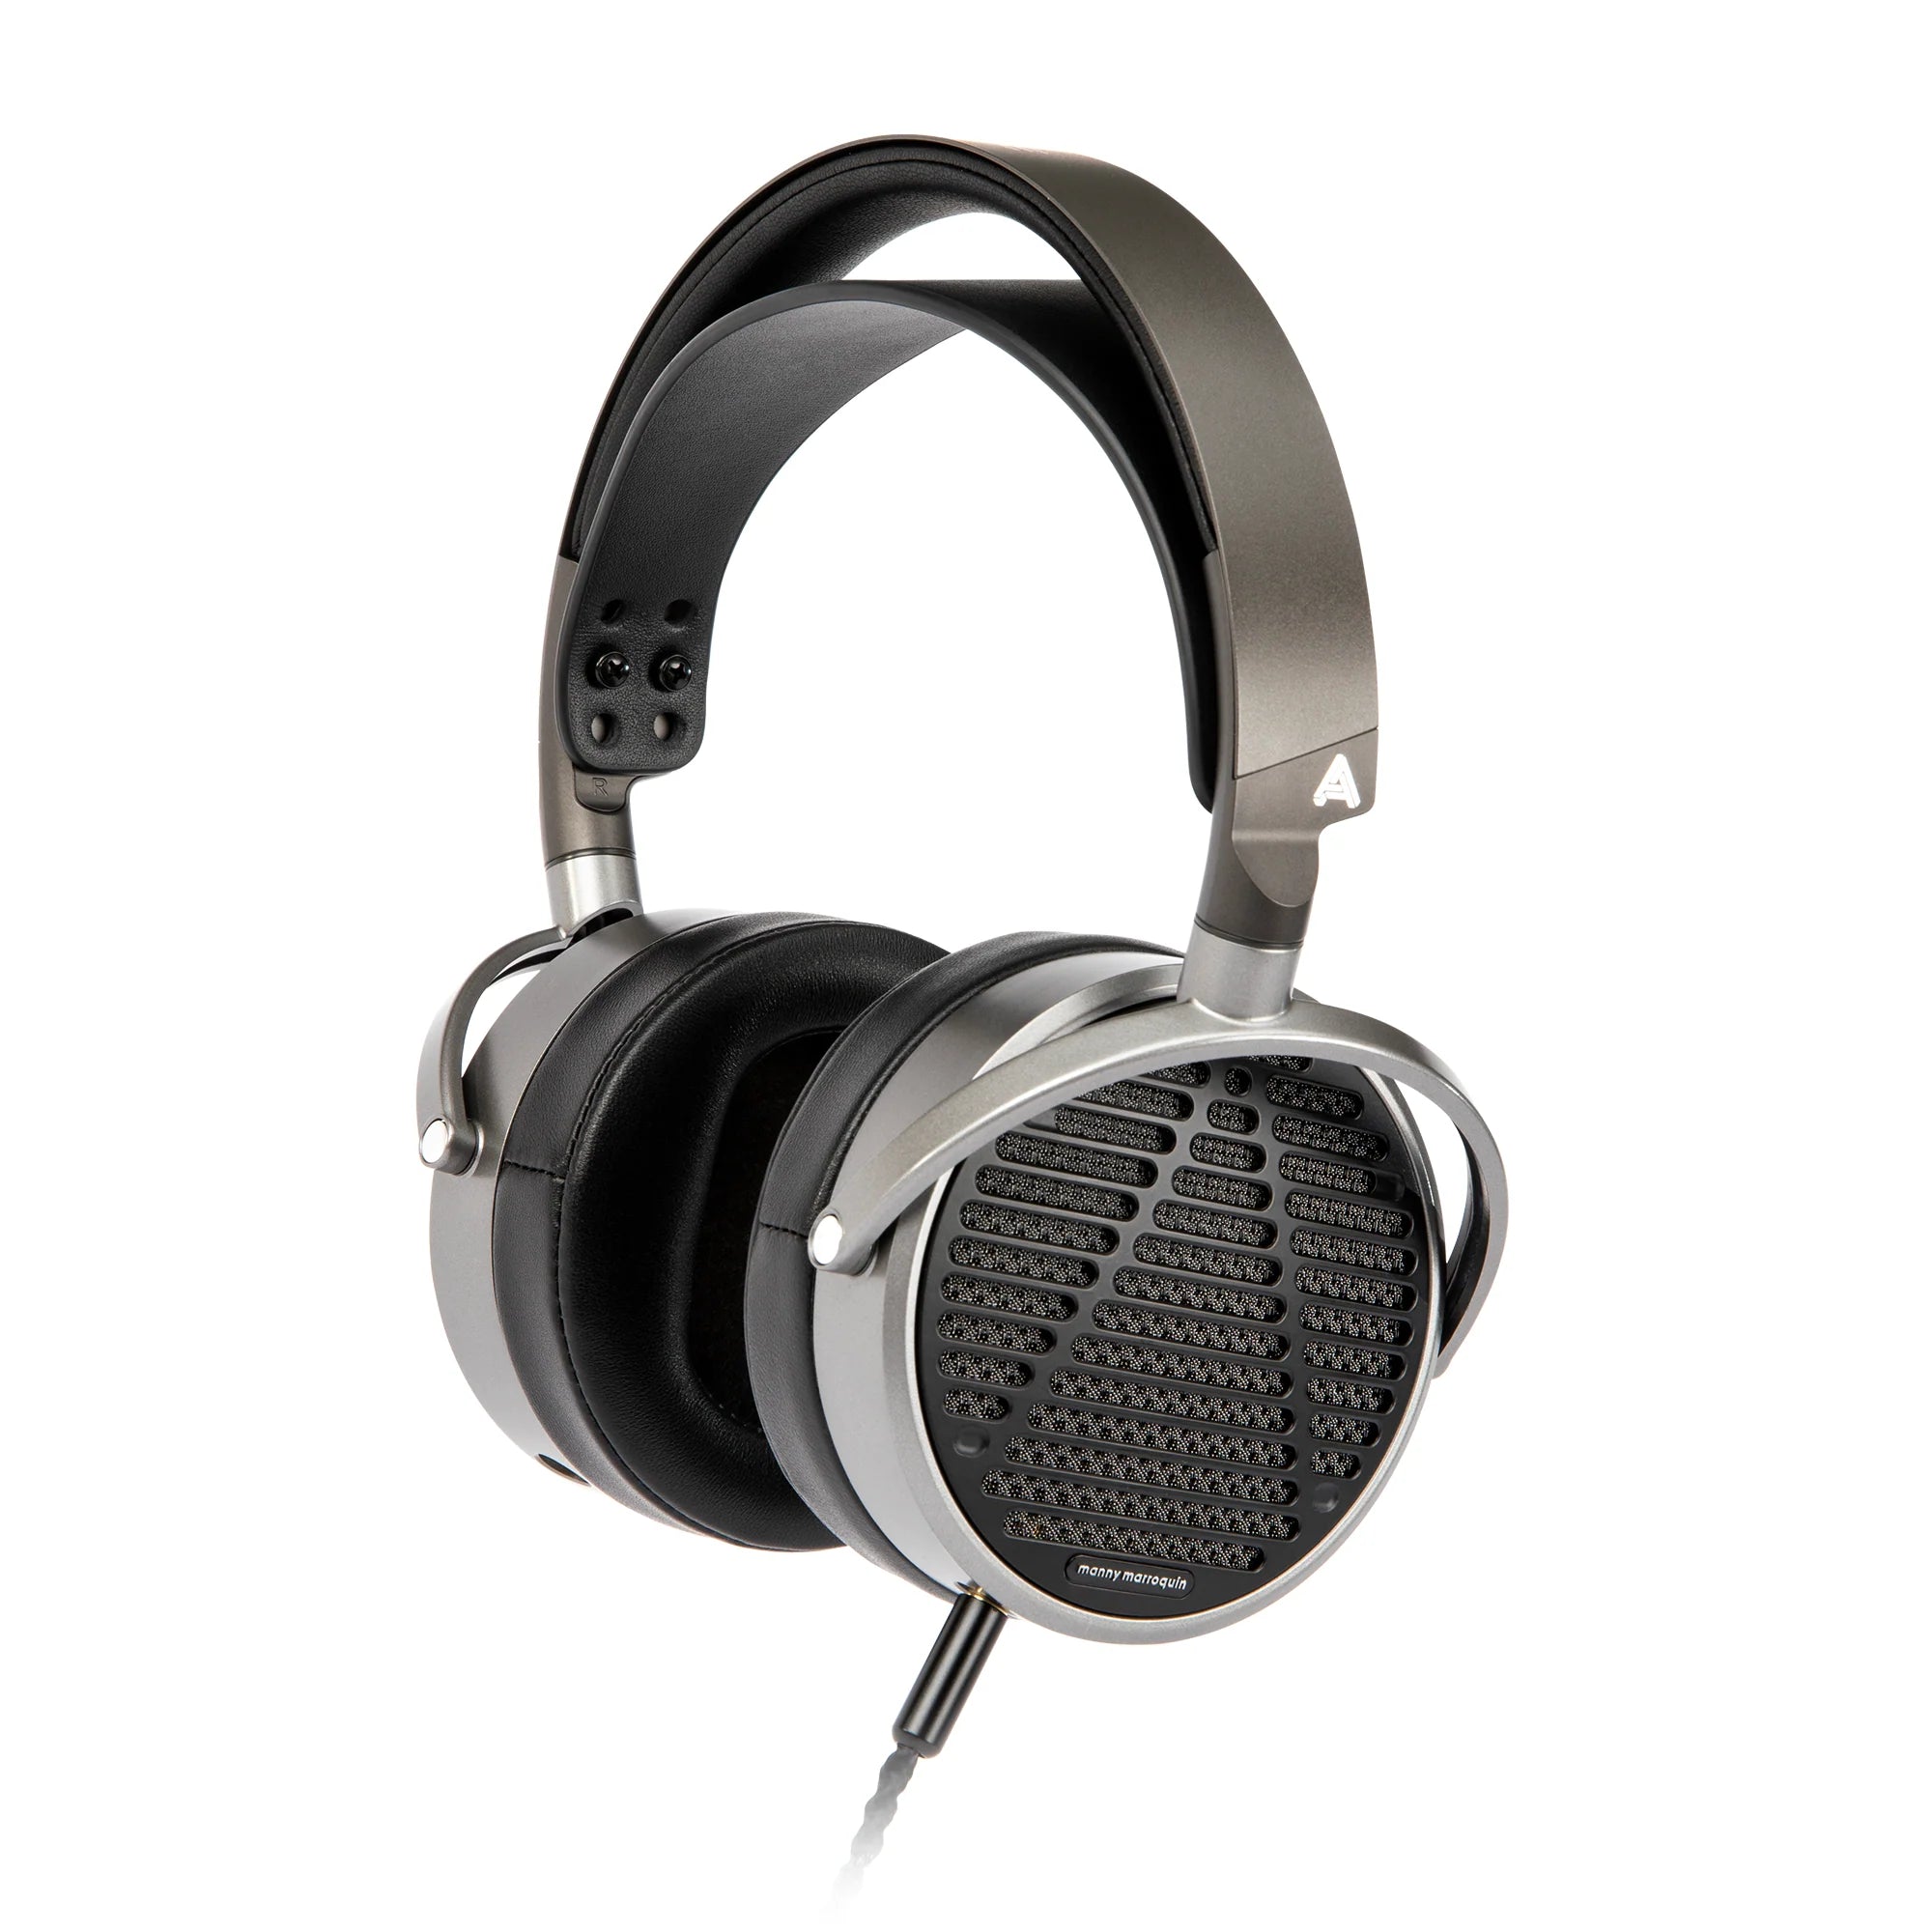 Audeze MM-100 open-back headphones